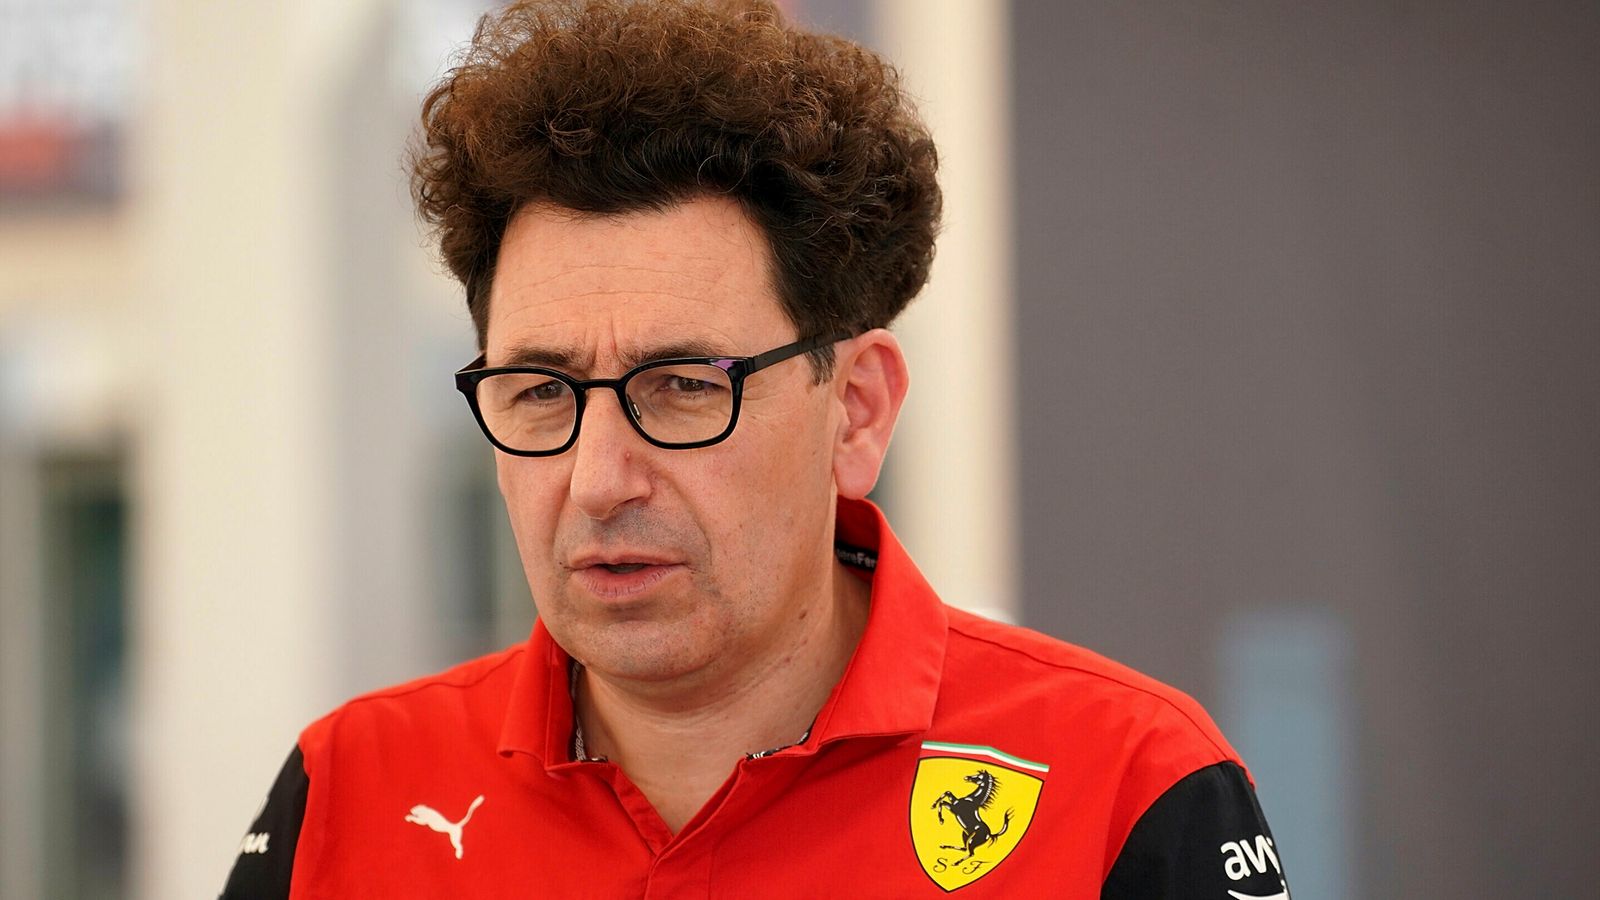 Mattia Binotto resigns as Ferrari team principal after failed 2022 Formula 1 title bid